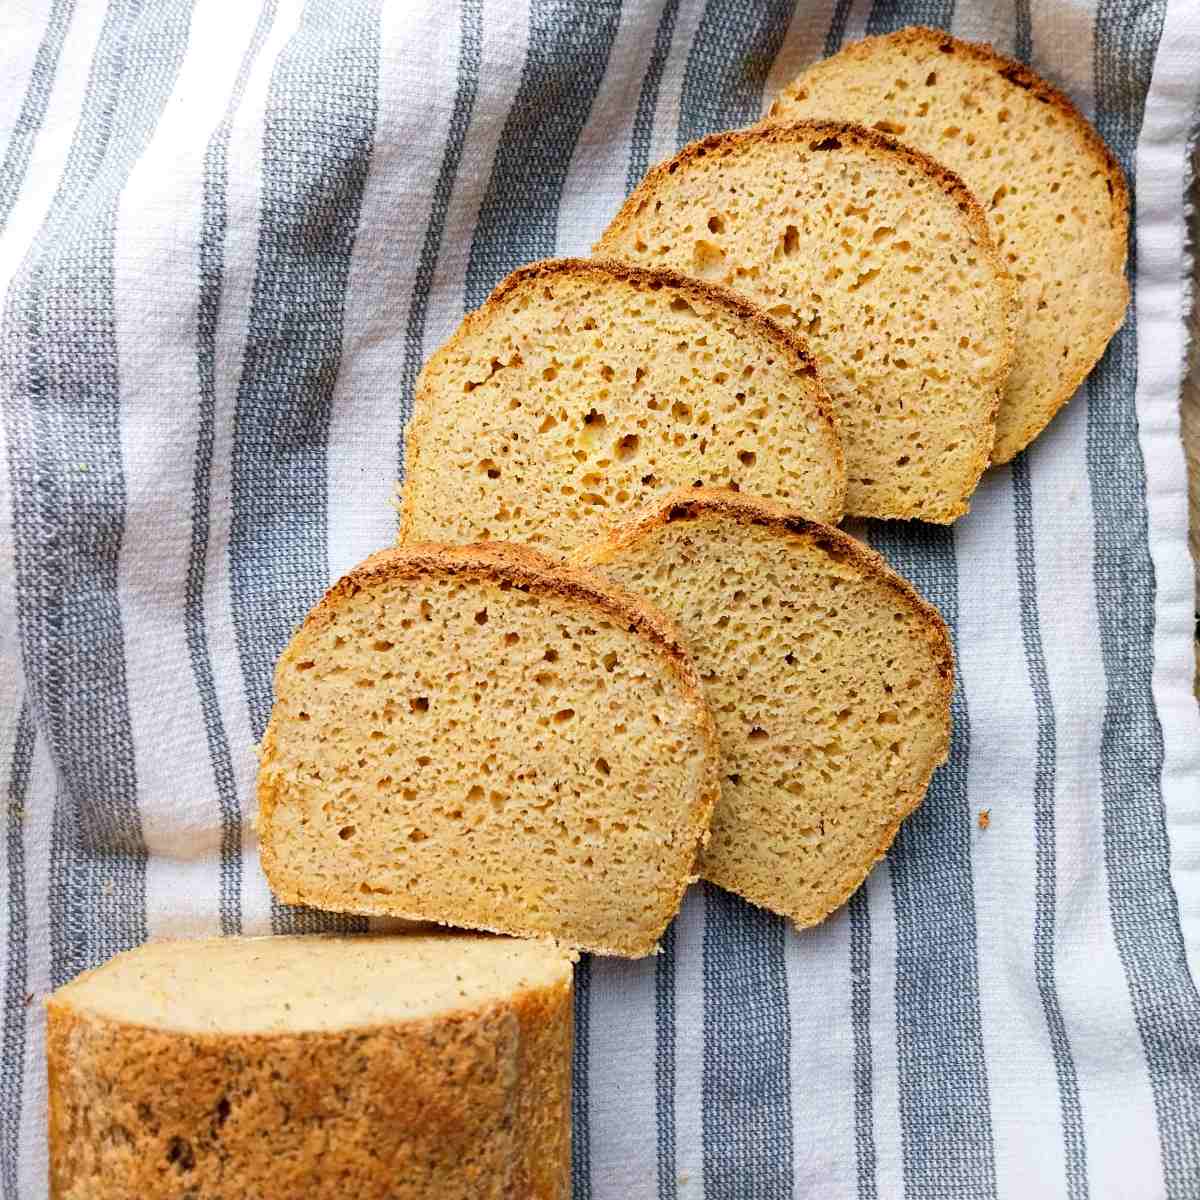 A loaf of millet bread sliced on a kitchen towel.